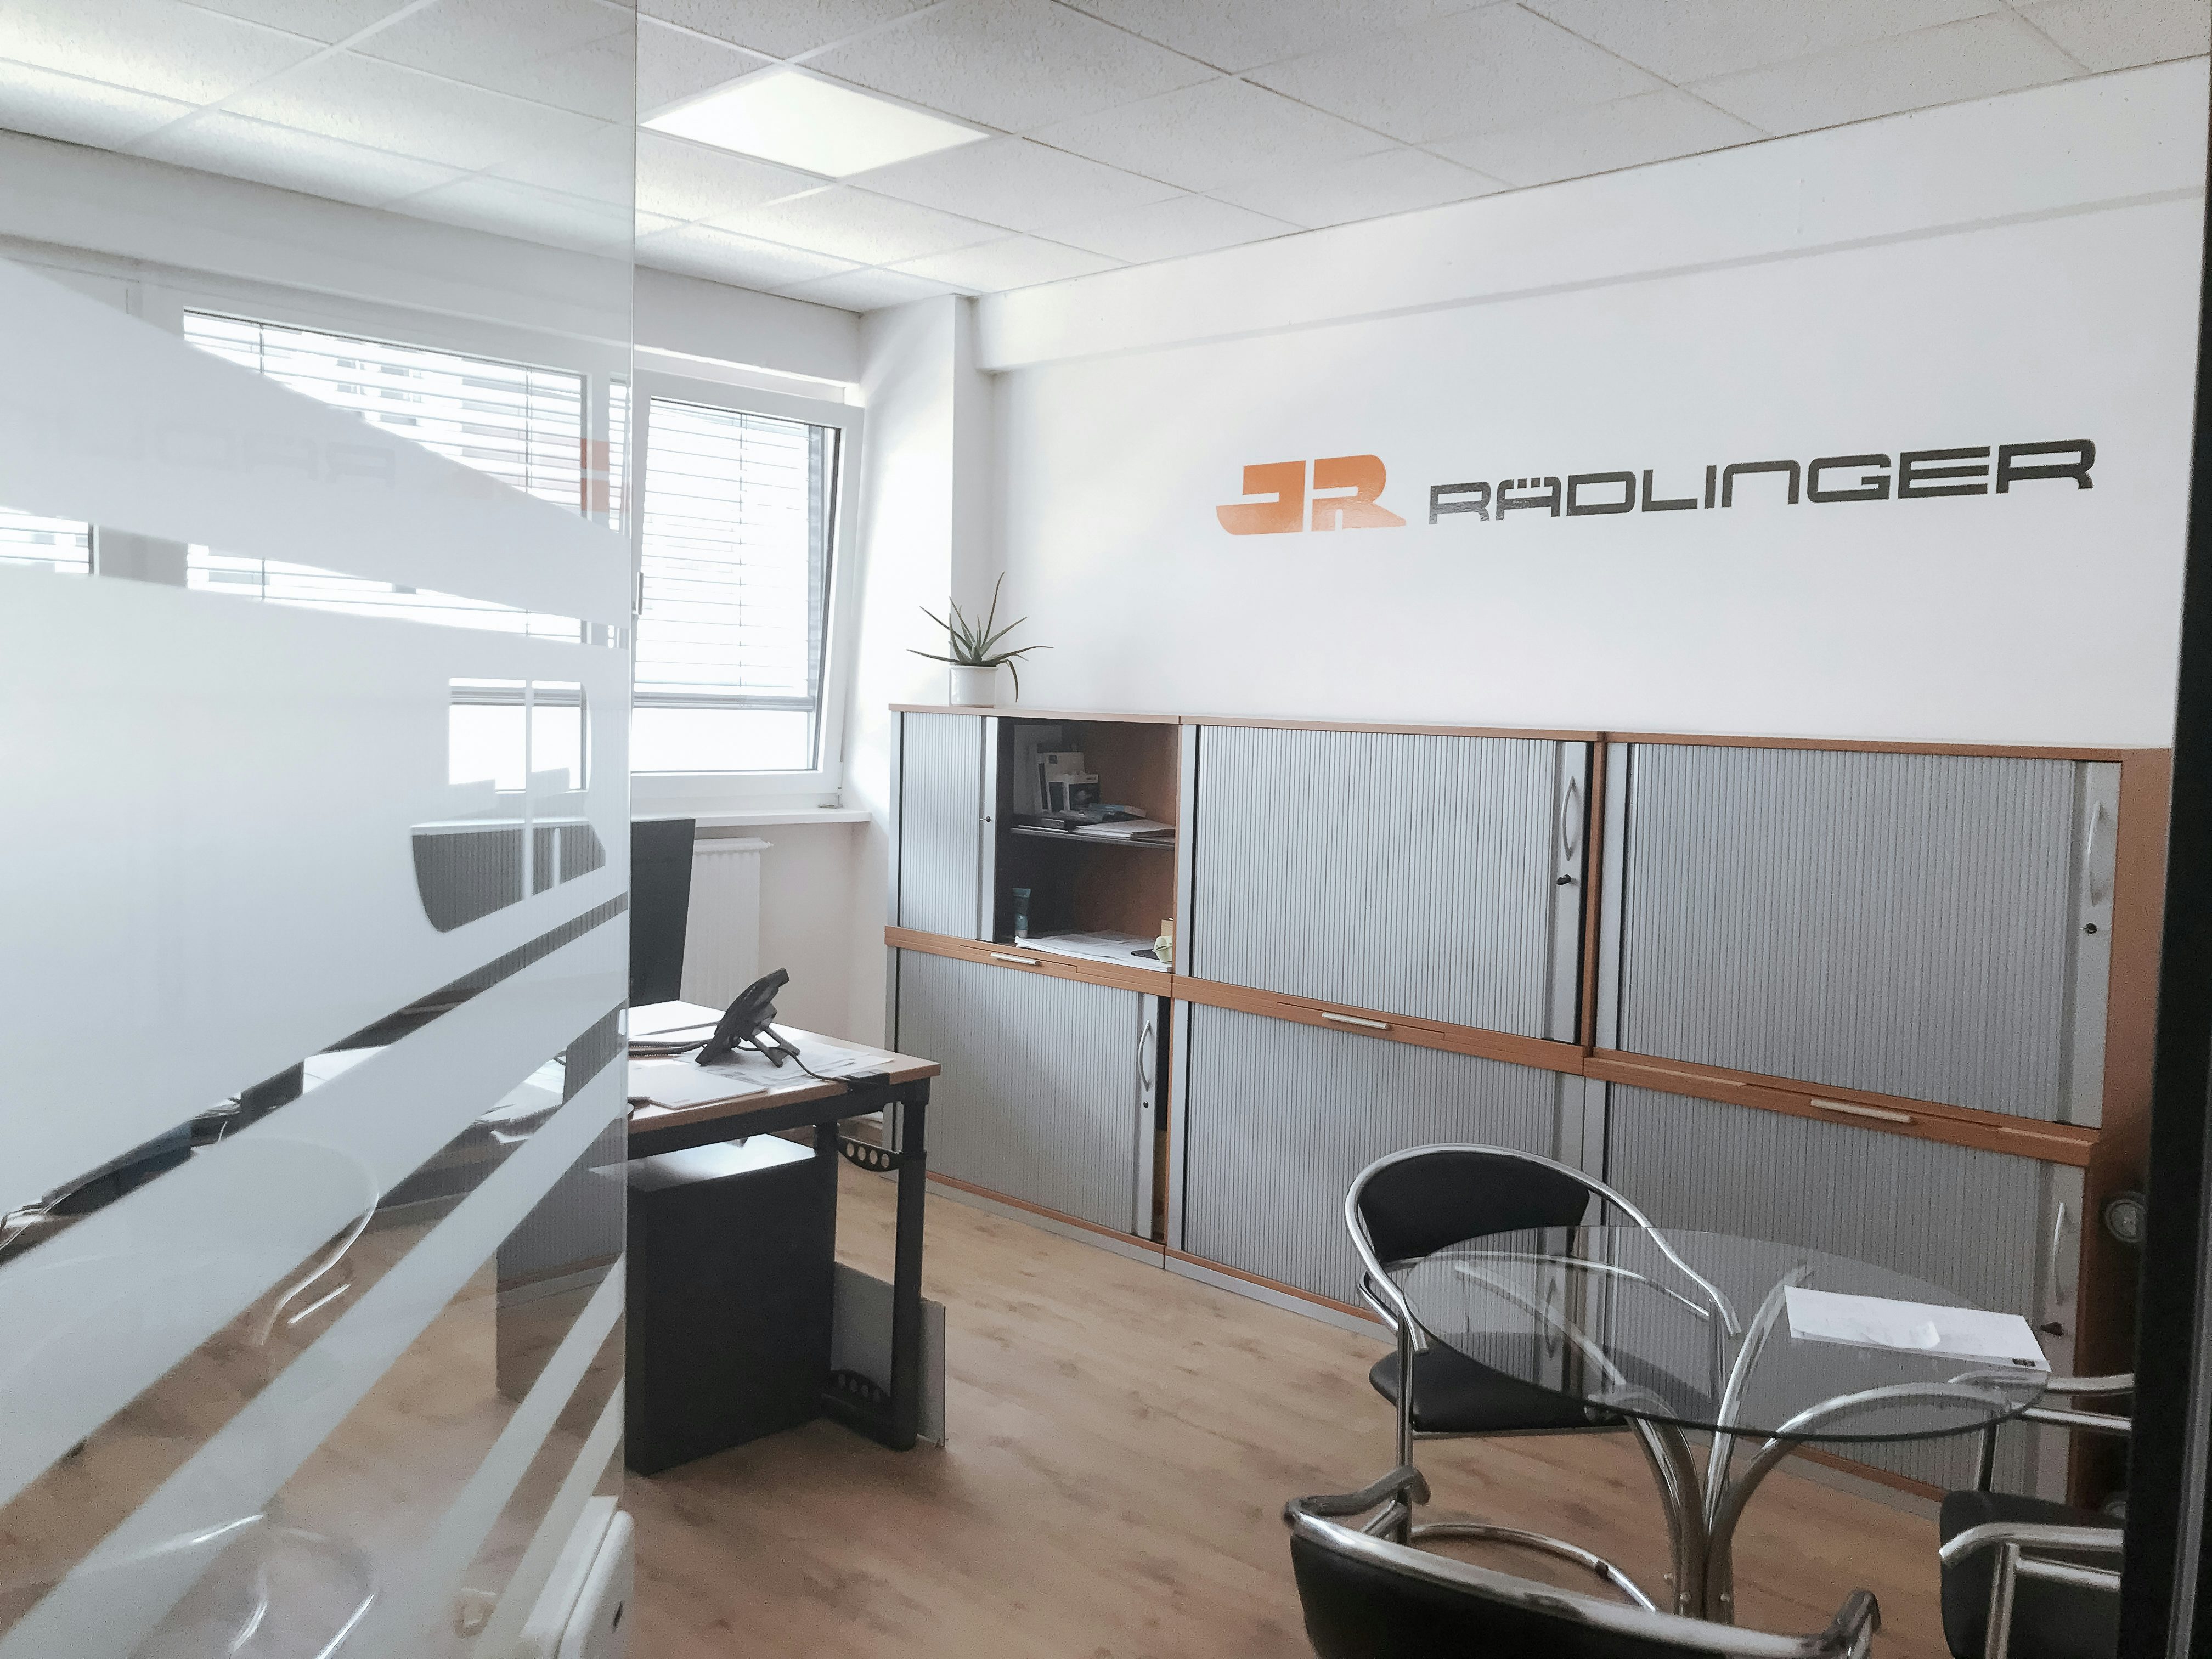 Rädlinger Standort in Fürth: helles Büro mit moderner Ausstattung von innen